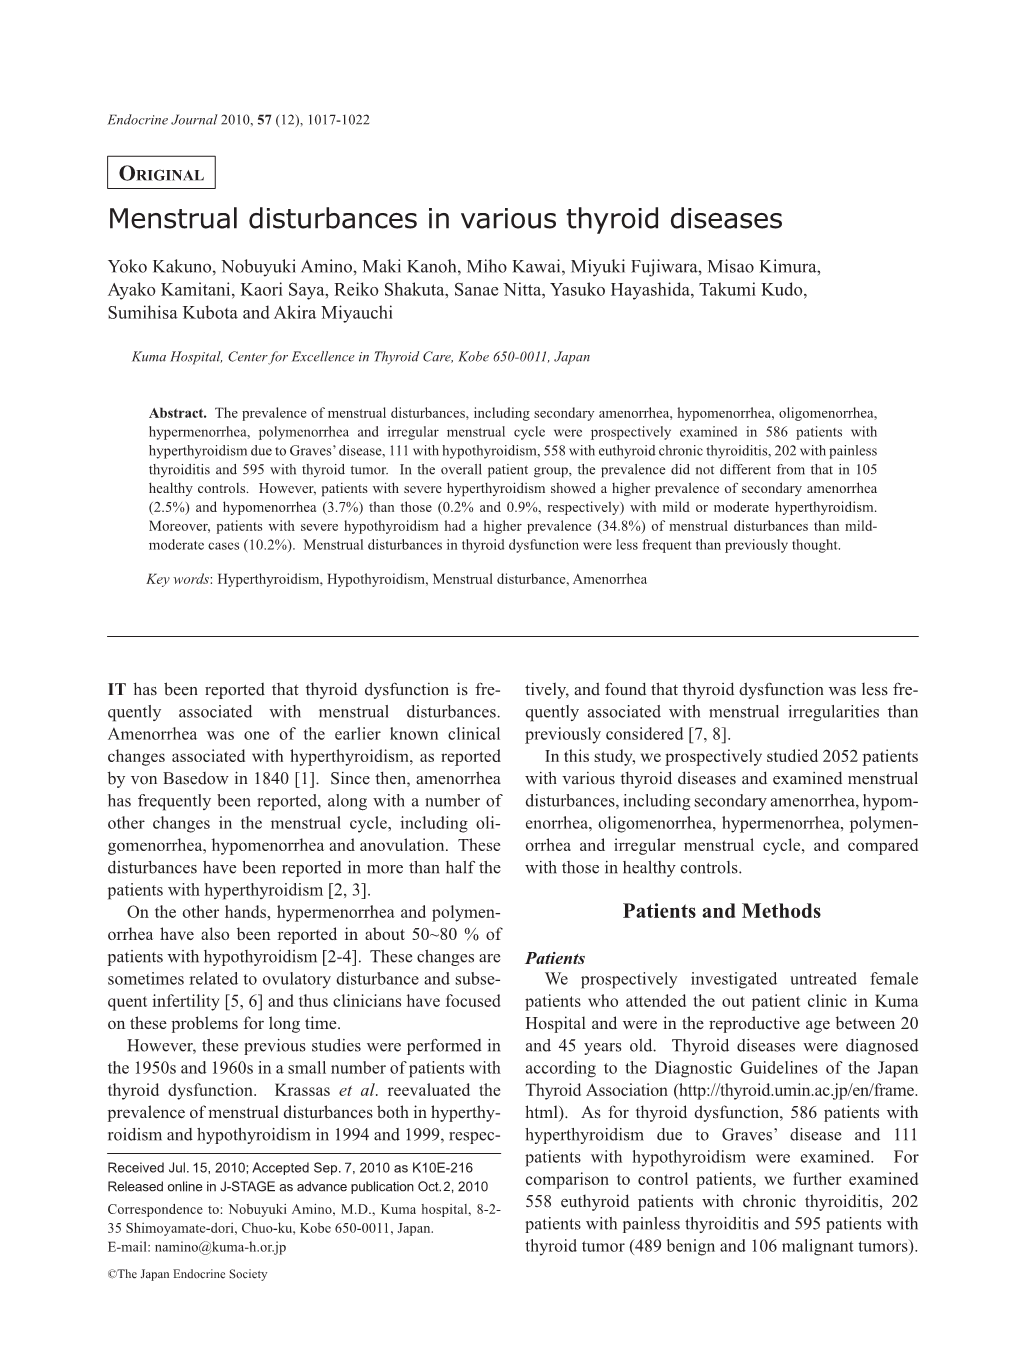 Menstrual Disturbances in Various Thyroid Diseases